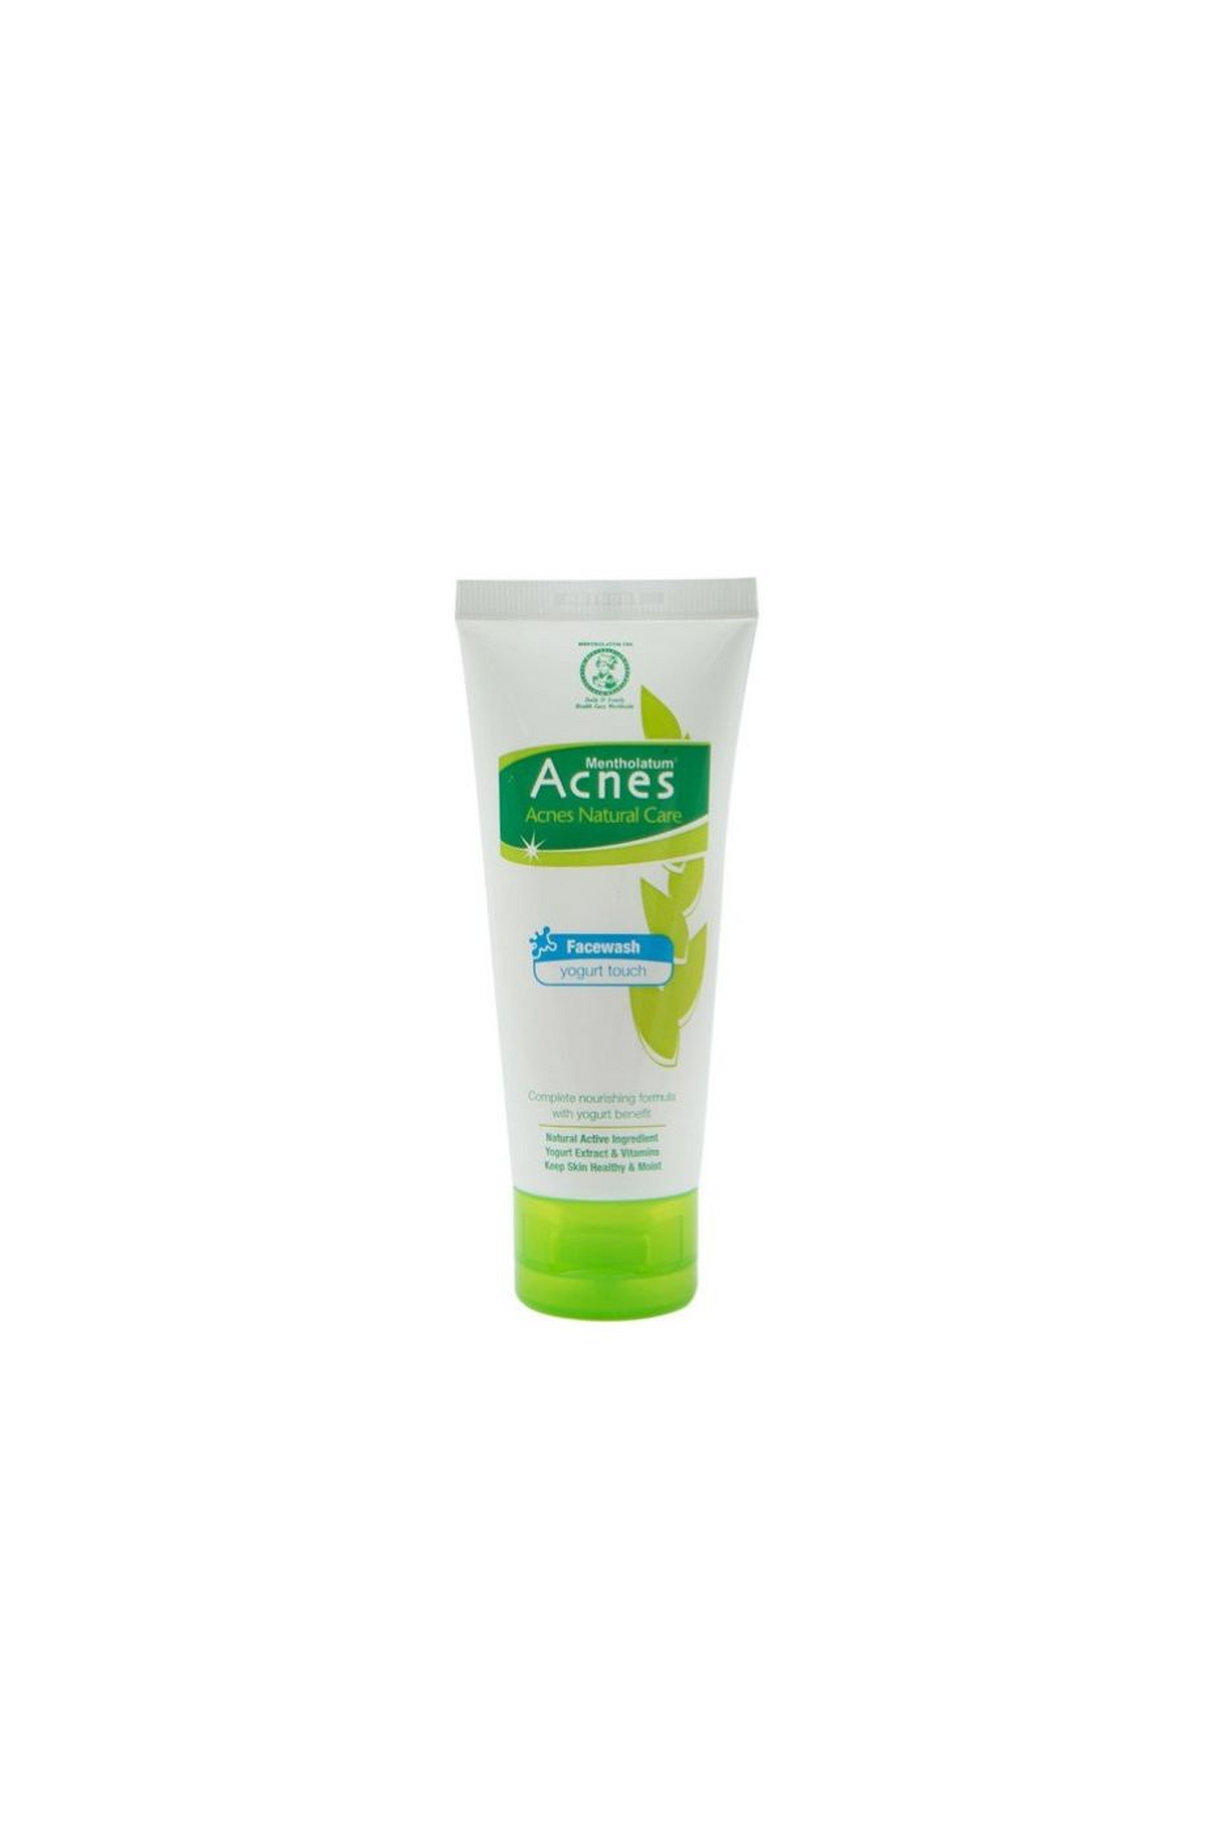 acnes face wash yogurt 50g